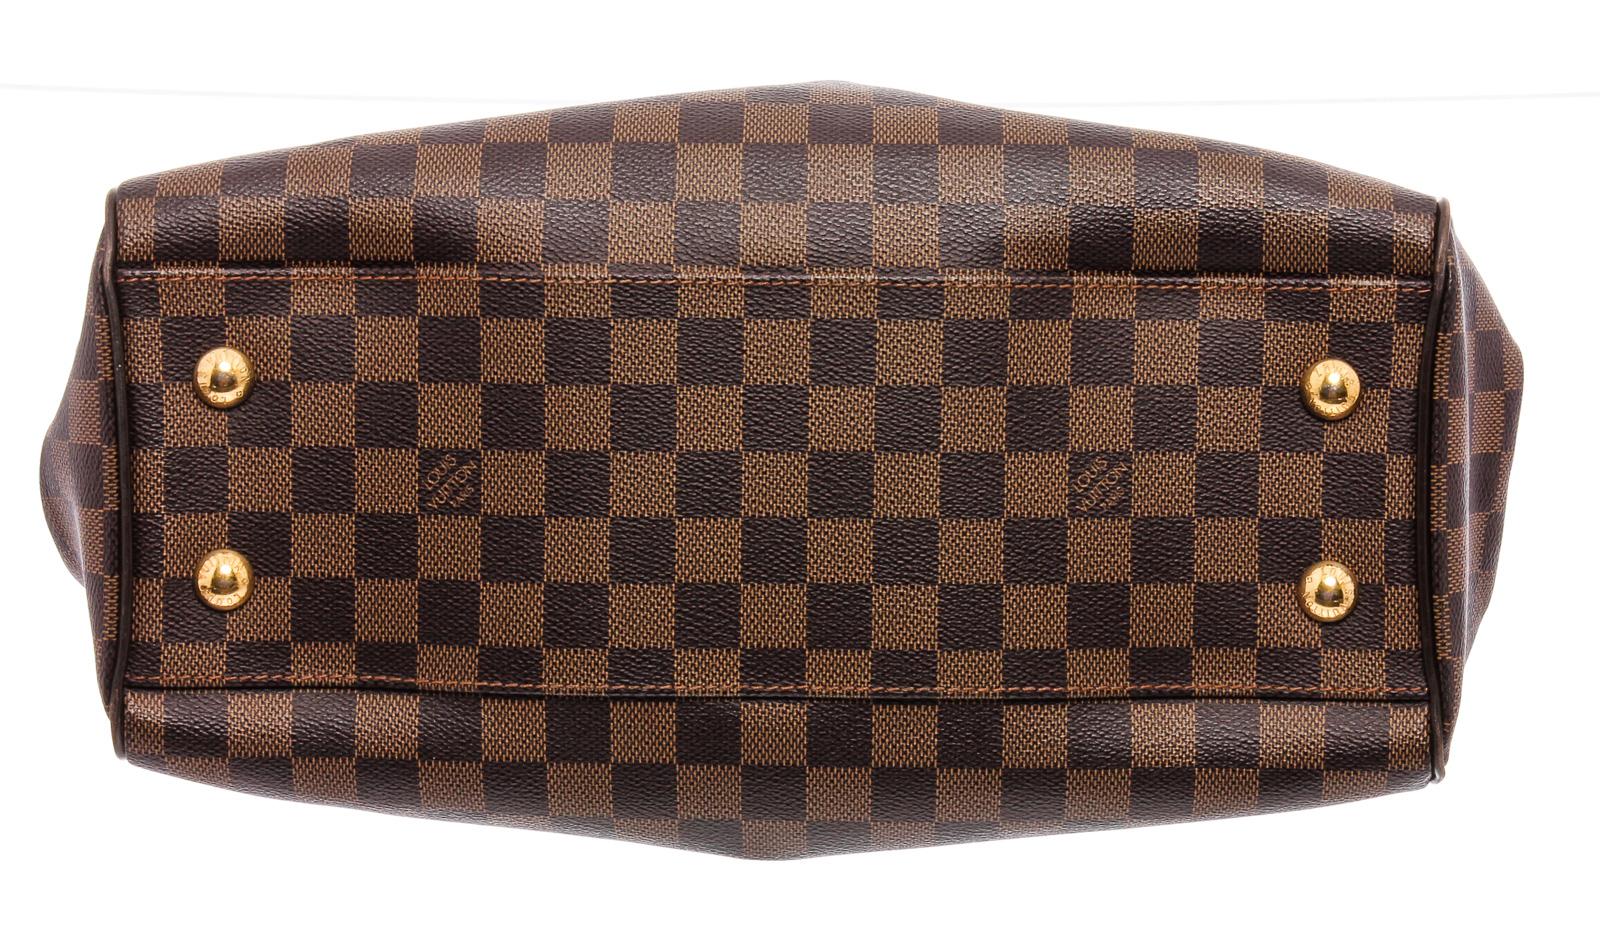 Black Louis Vuitton Damier Ebene Canvas Leather Trevi PM Shoulder Bag